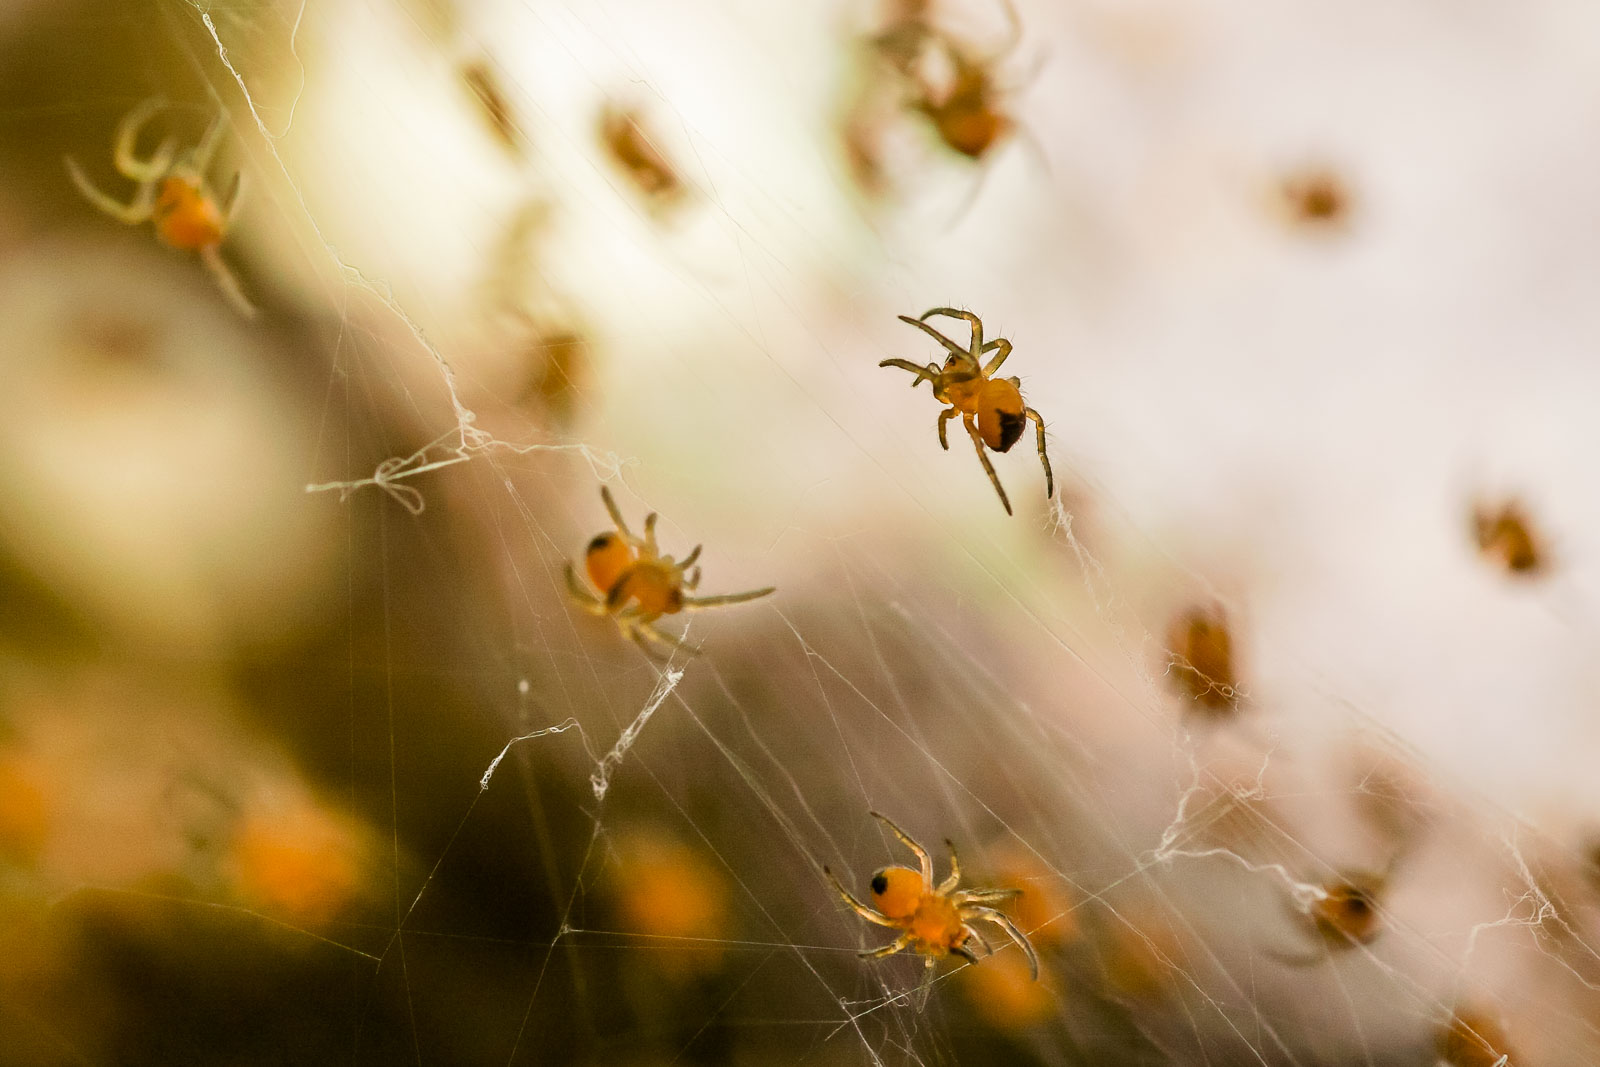 Spider babies - Spinnen Nachwuchs